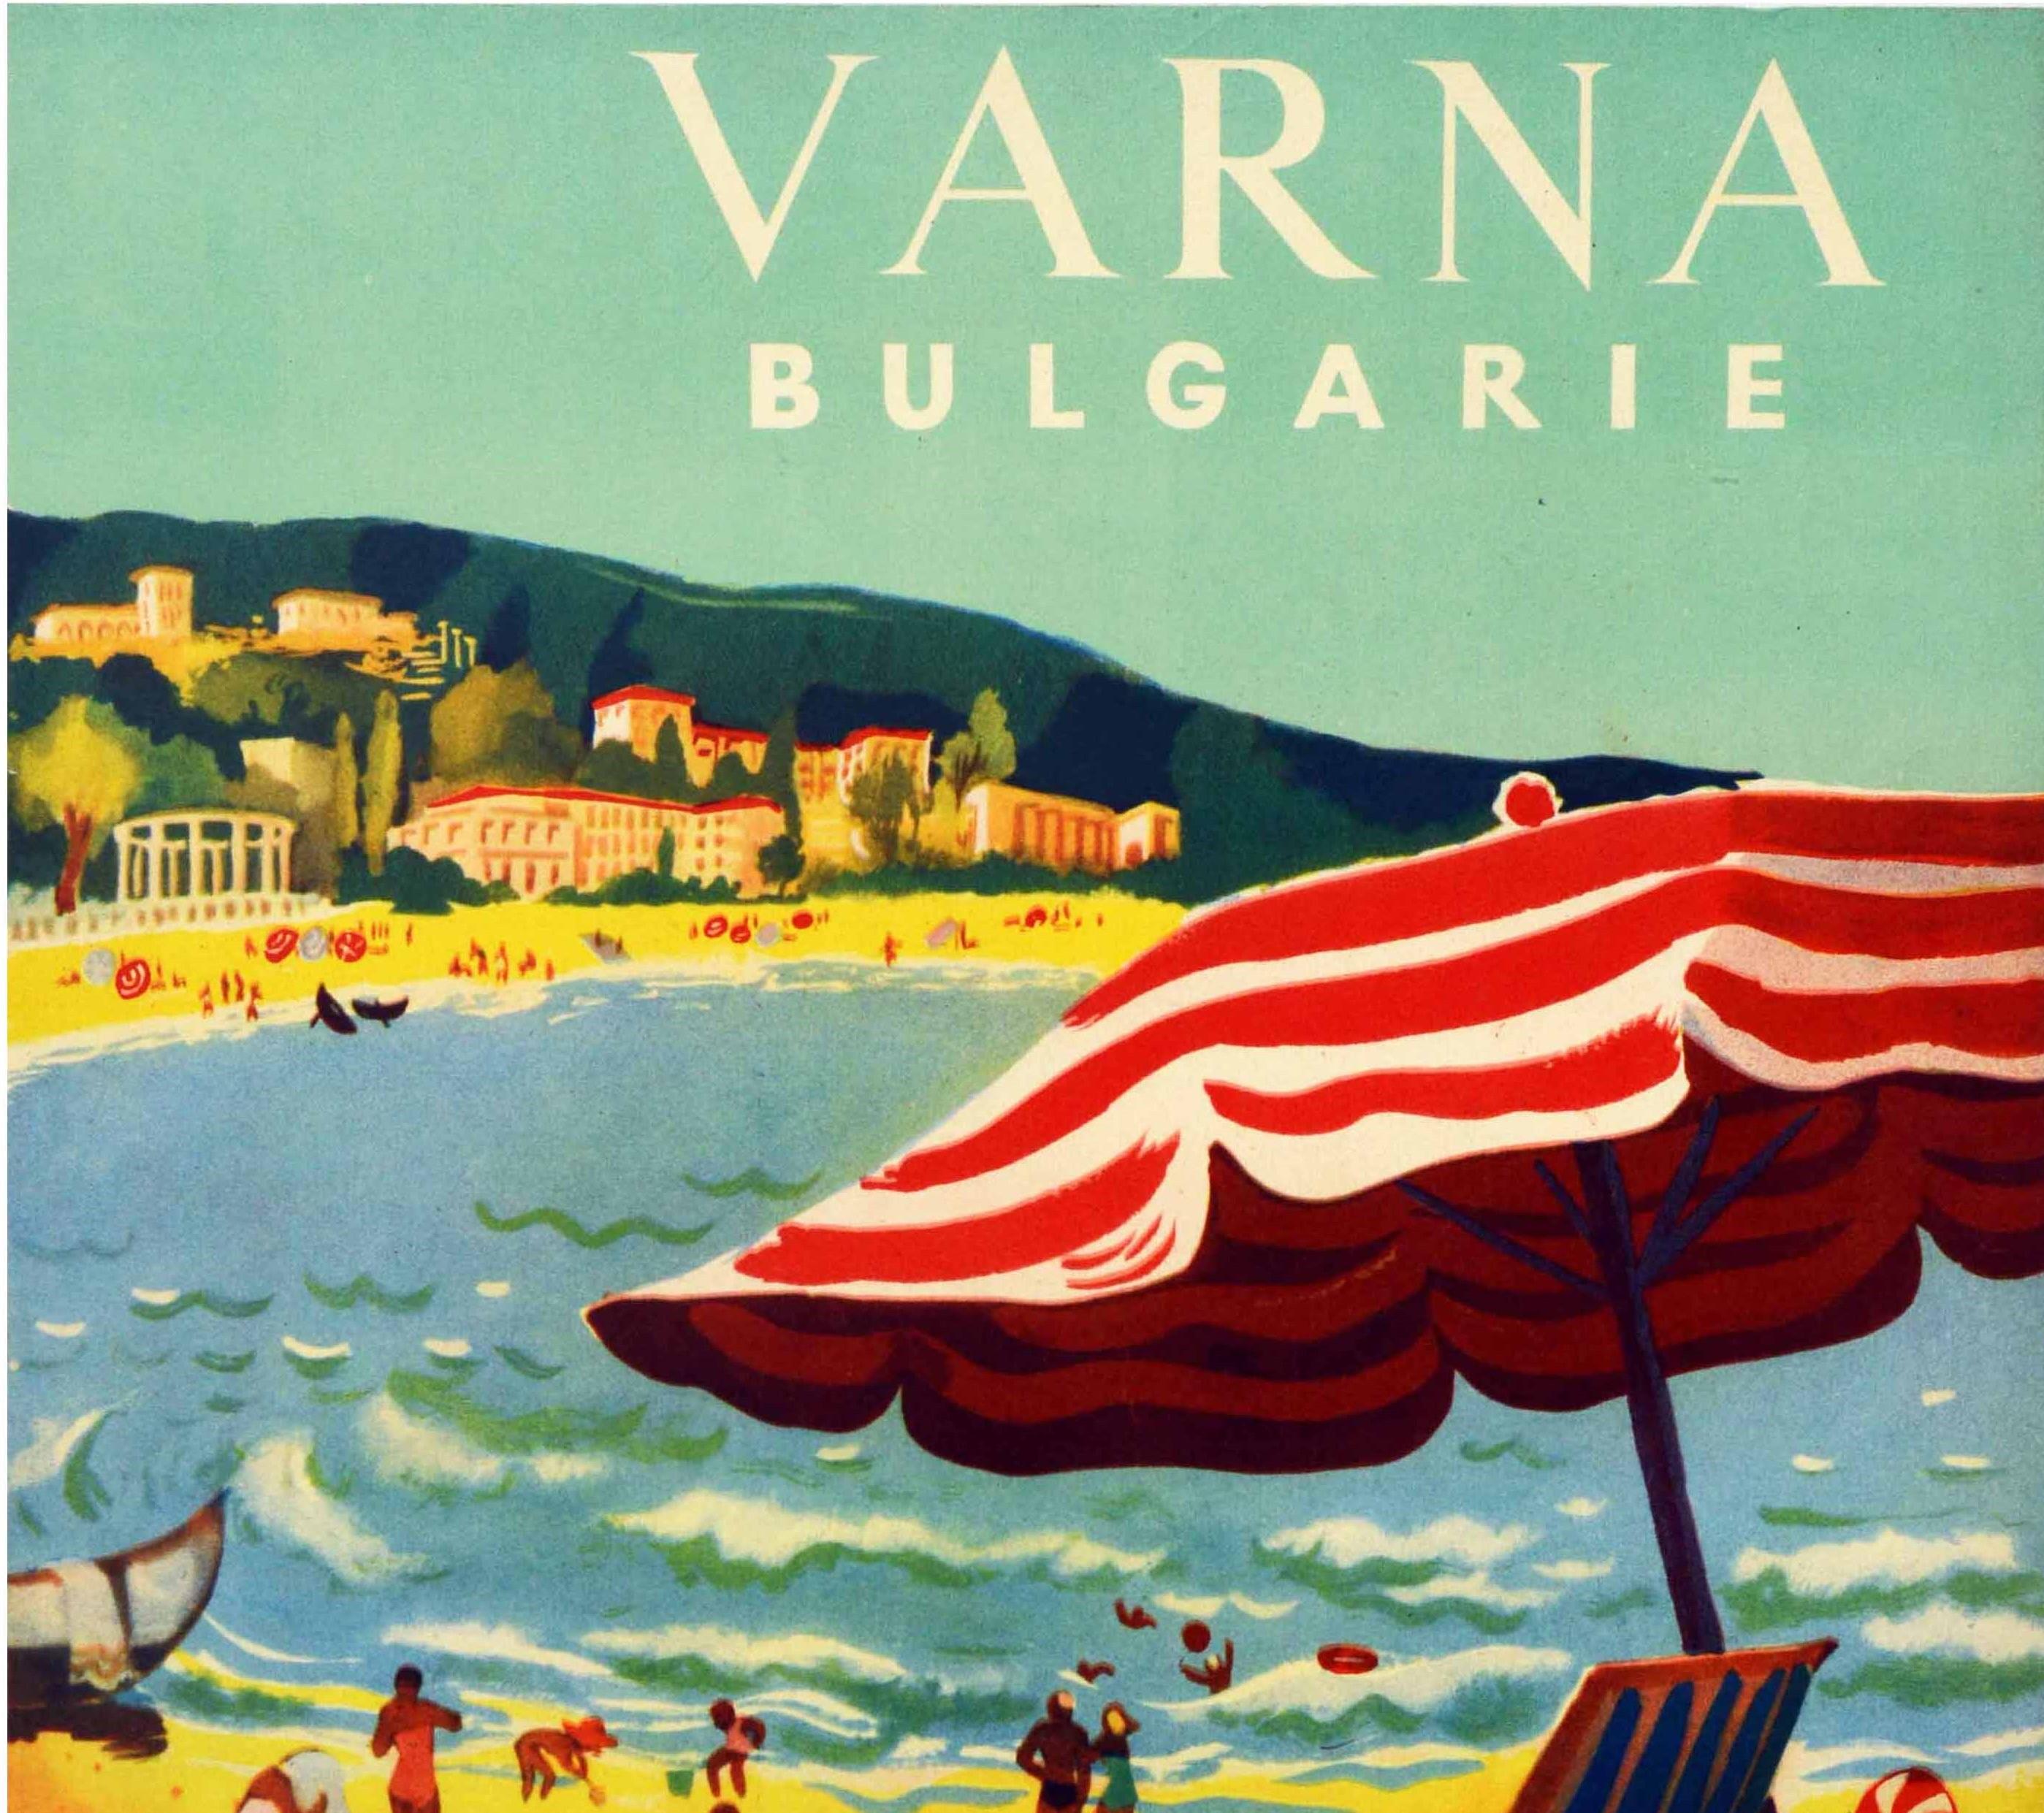 Original Vintage-Reiseplakat für Varna Bulgarien, herausgegeben von Balkantourist (dem ältesten bulgarischen Tourismusunternehmen, das 1948 gegründet wurde), mit Menschen, die im Meer schwimmen und sich sonnen, mit Kindern, die an einem Sandstrand